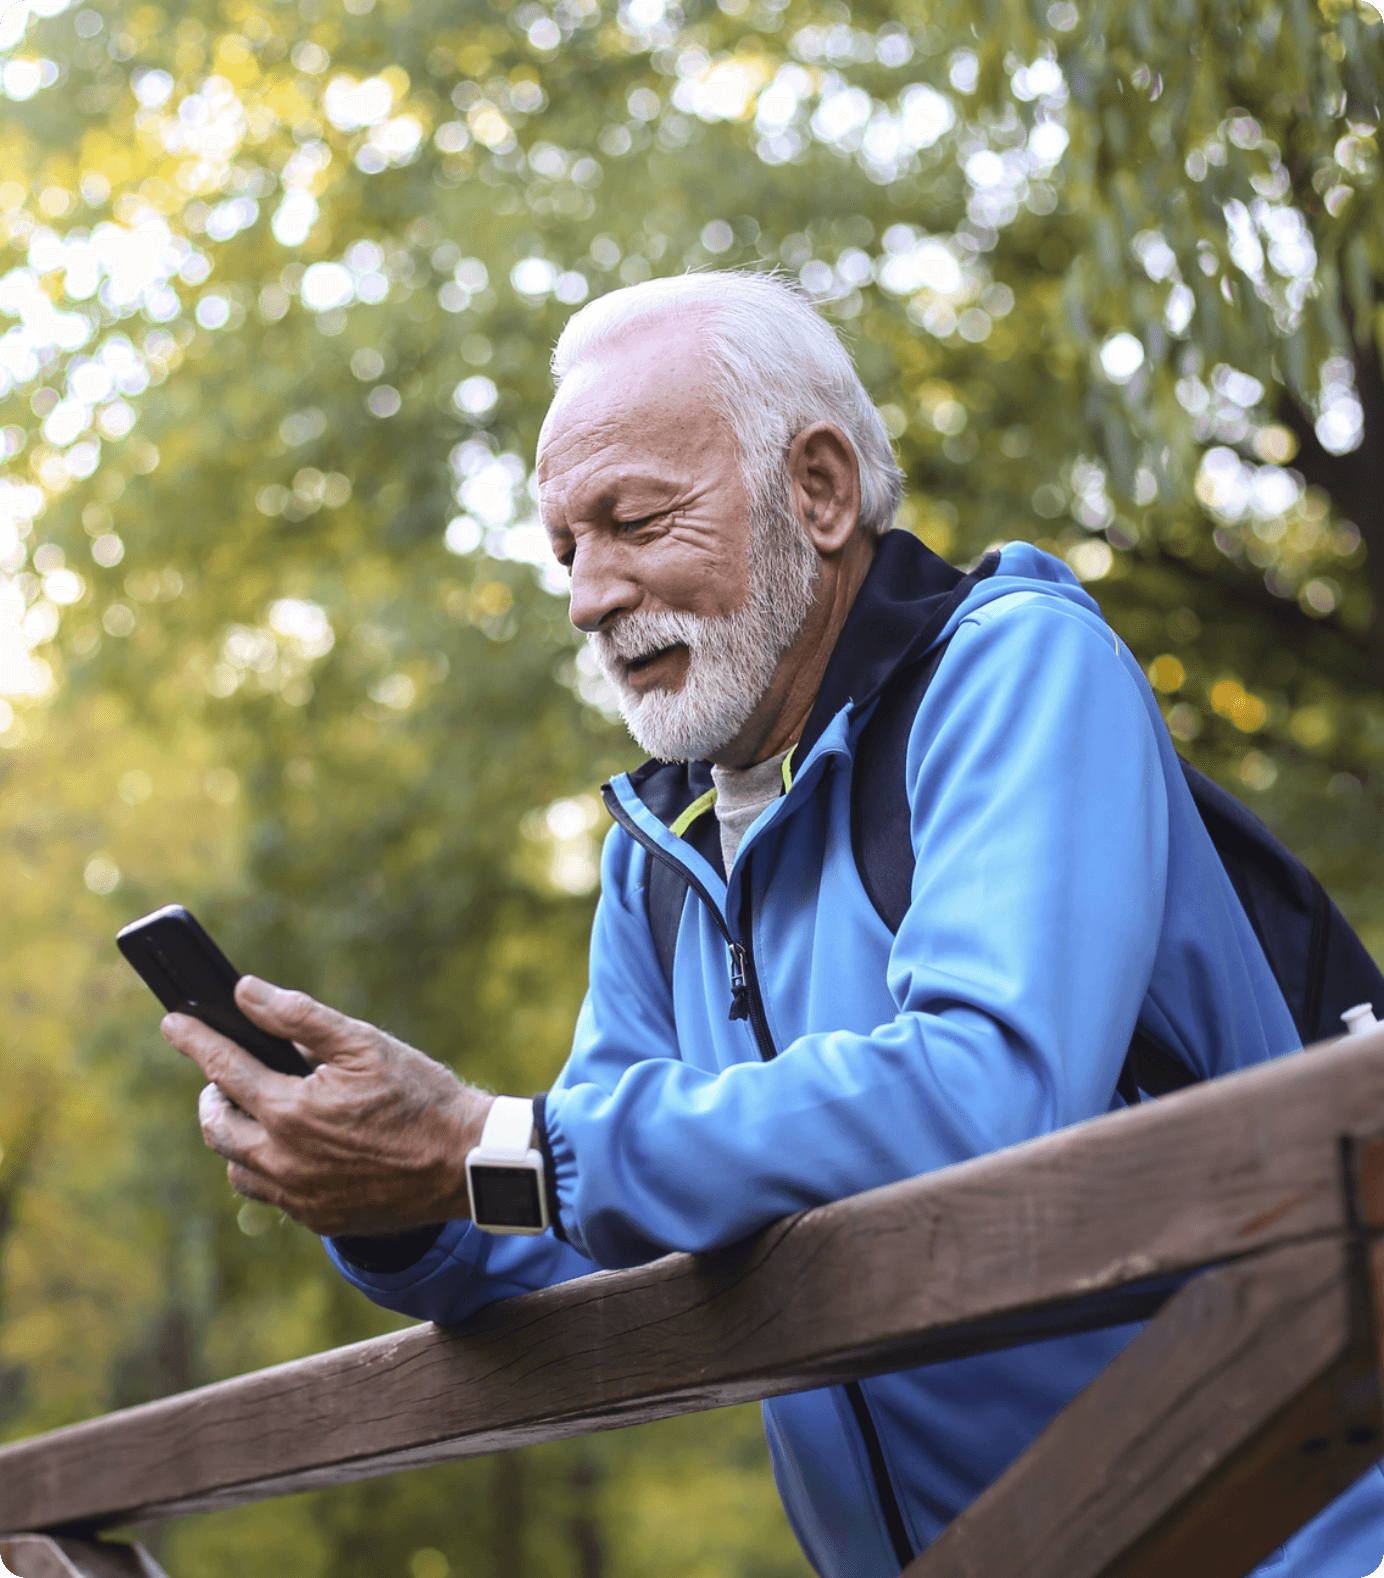 Senior adult male looking at phone on bridge